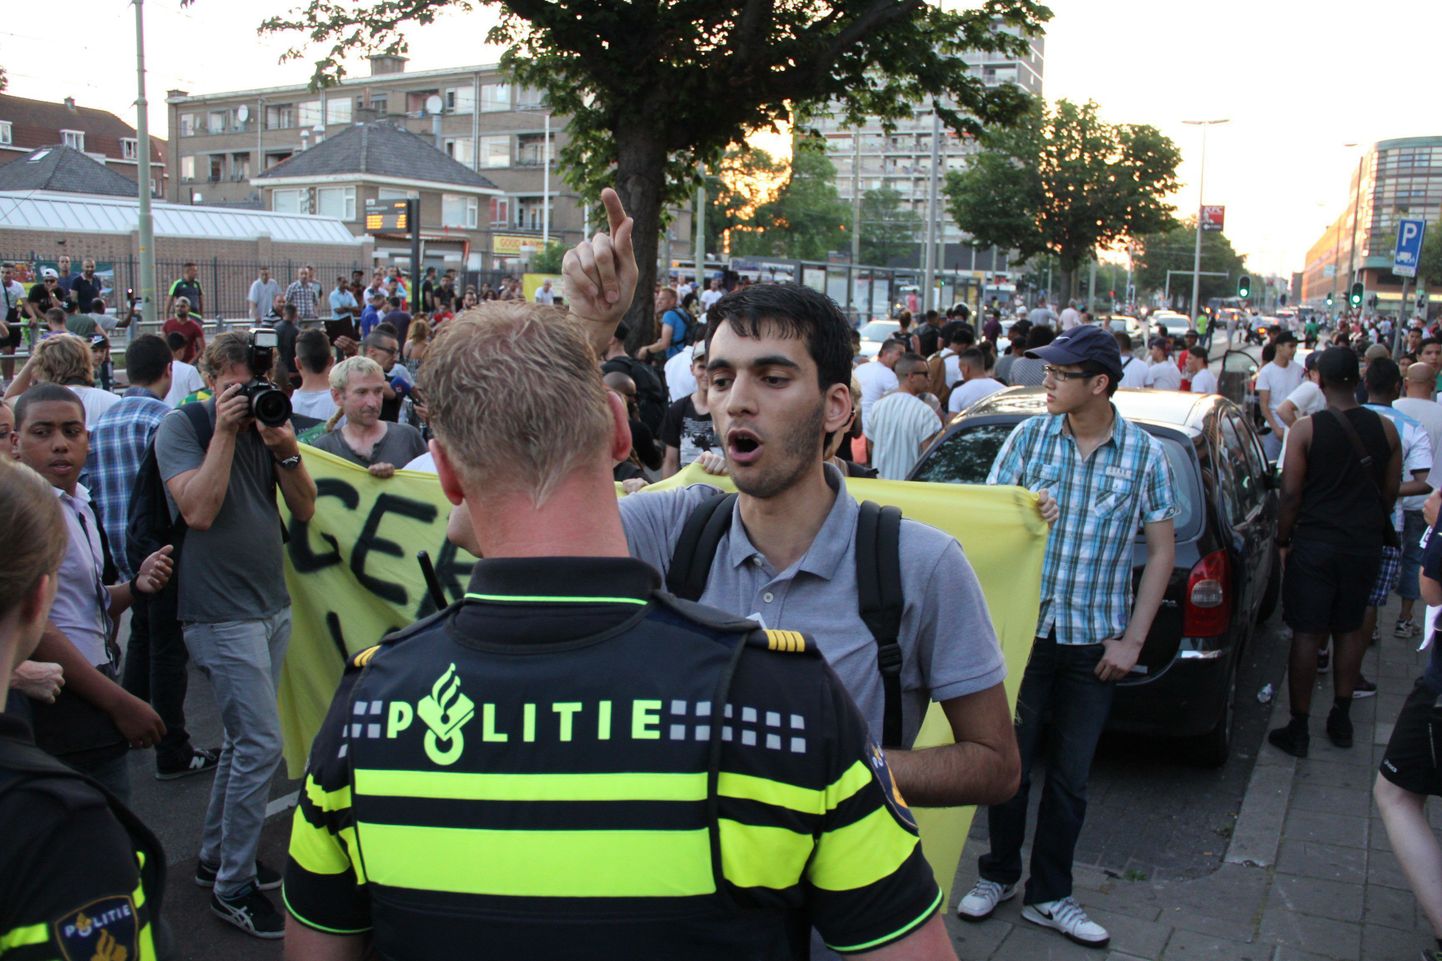 Protestijad Haagis alustasid protestimist pärast Aruba päritolu isiku surma 28.juunil.